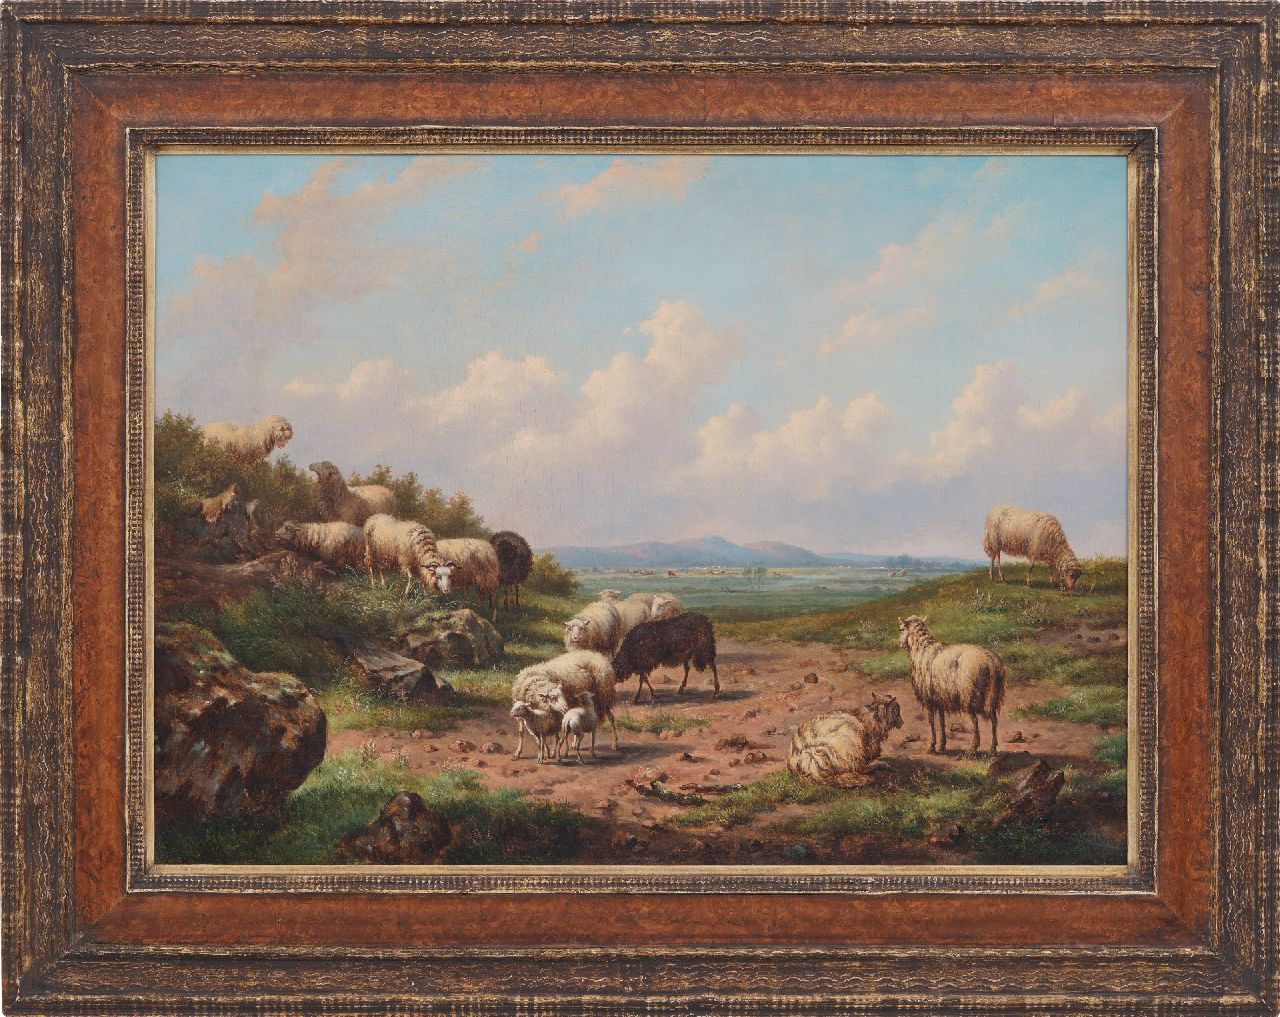 Verwee L.P.  | Louis Pierre Verwee | Schilderijen te koop aangeboden | Schapen in een weids landschap, olieverf op doek 55,8 x 75,5 cm, gesigneerd middenonder